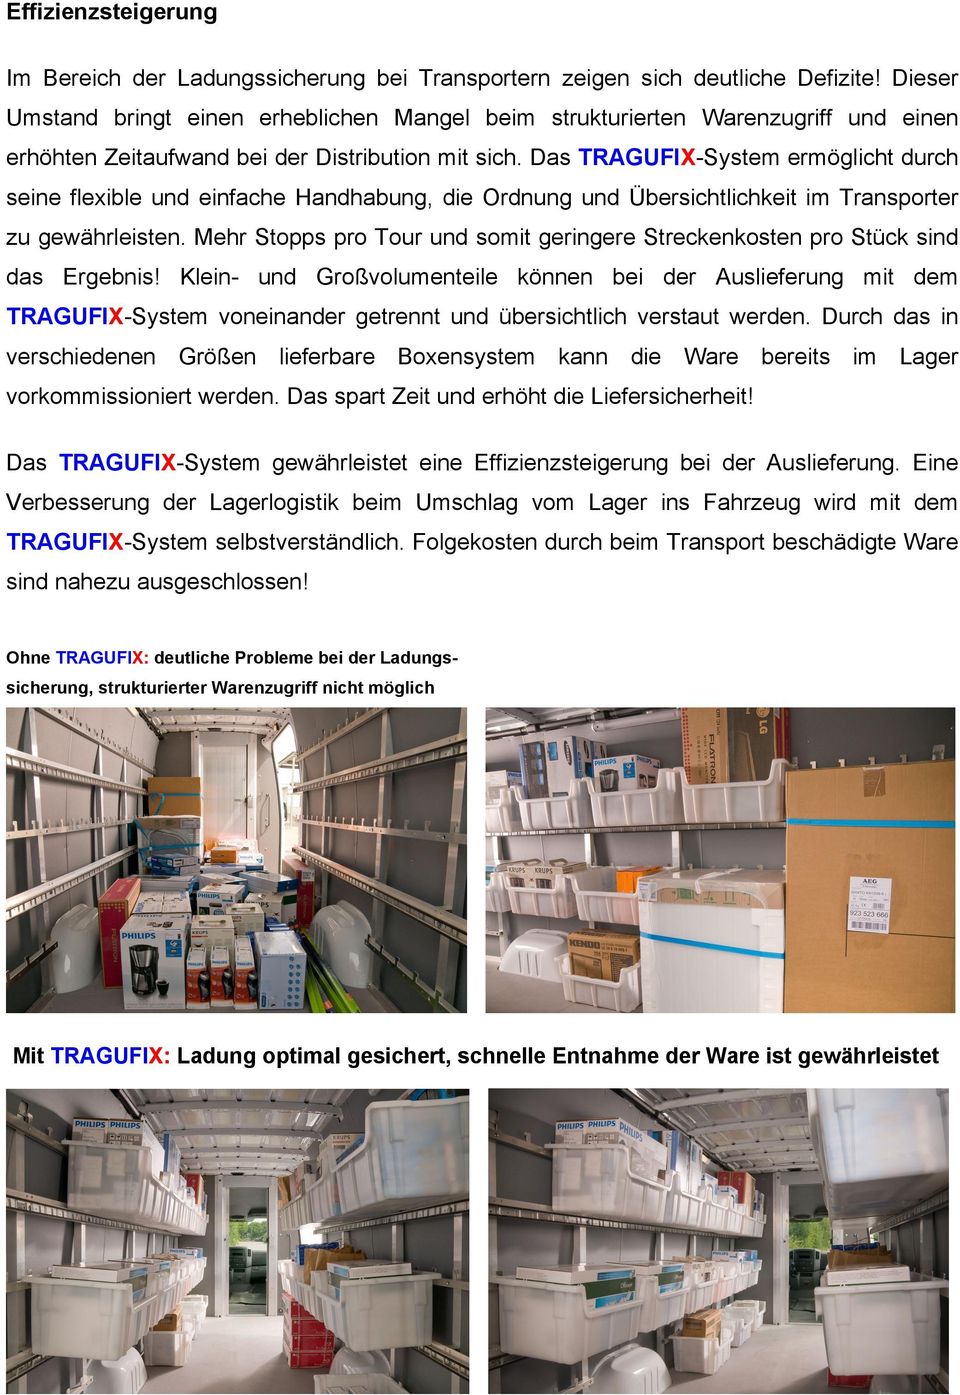 Das TRAGUFIX-System ermöglicht durch seine flexible und einfache Handhabung, die Ordnung und Übersichtlichkeit im Transporter zu gewährleisten.